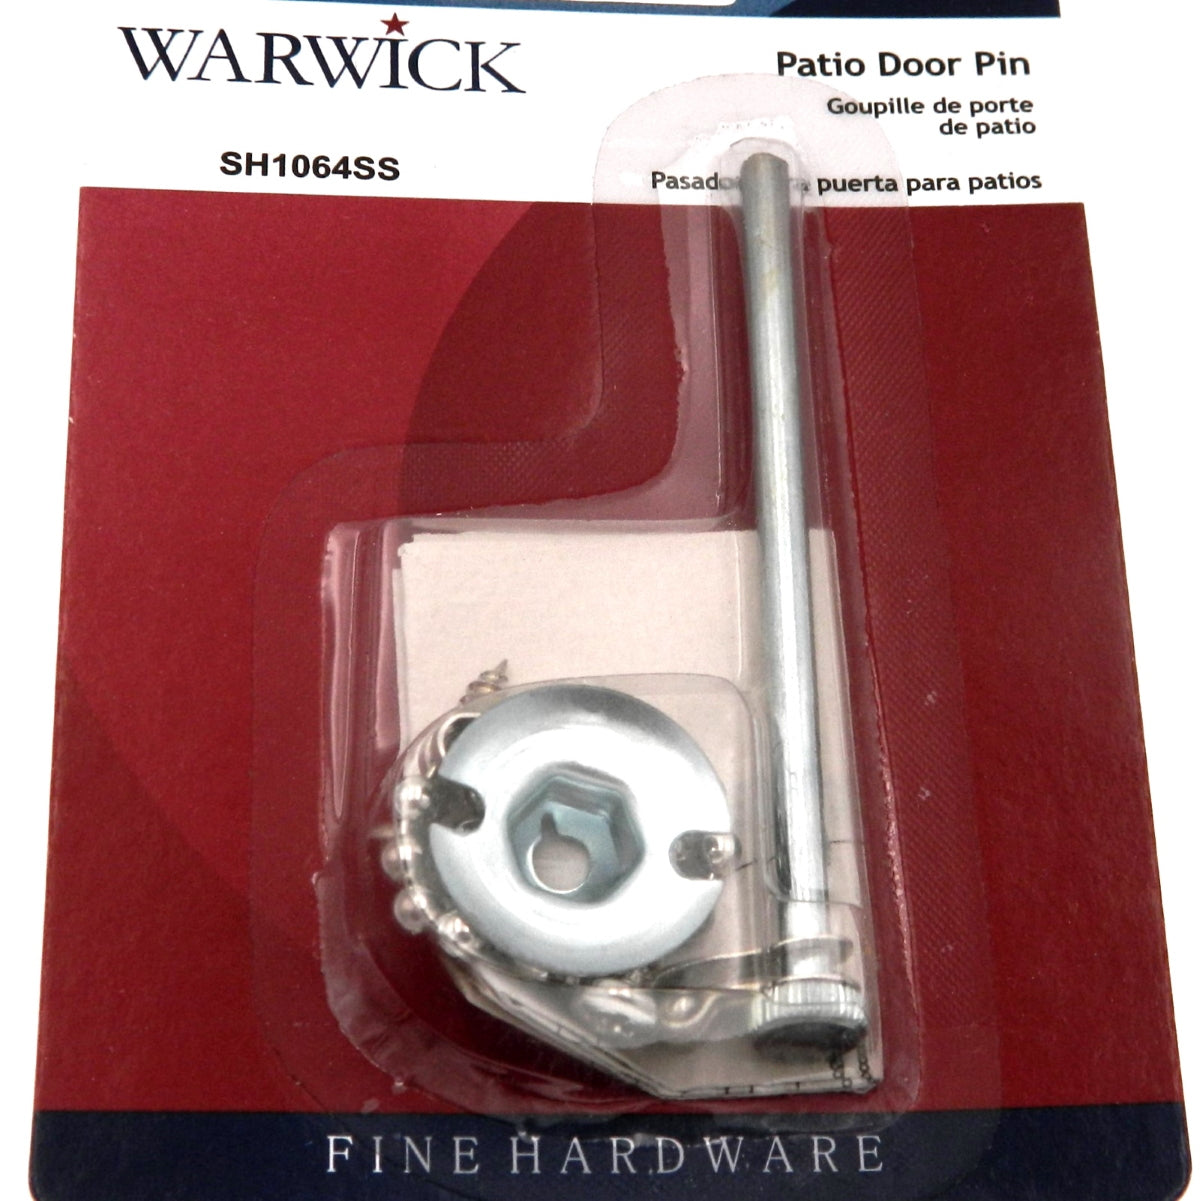 Cerradura de puerta con pasador para puerta de patio Warwick, acero inoxidable SH1064SS